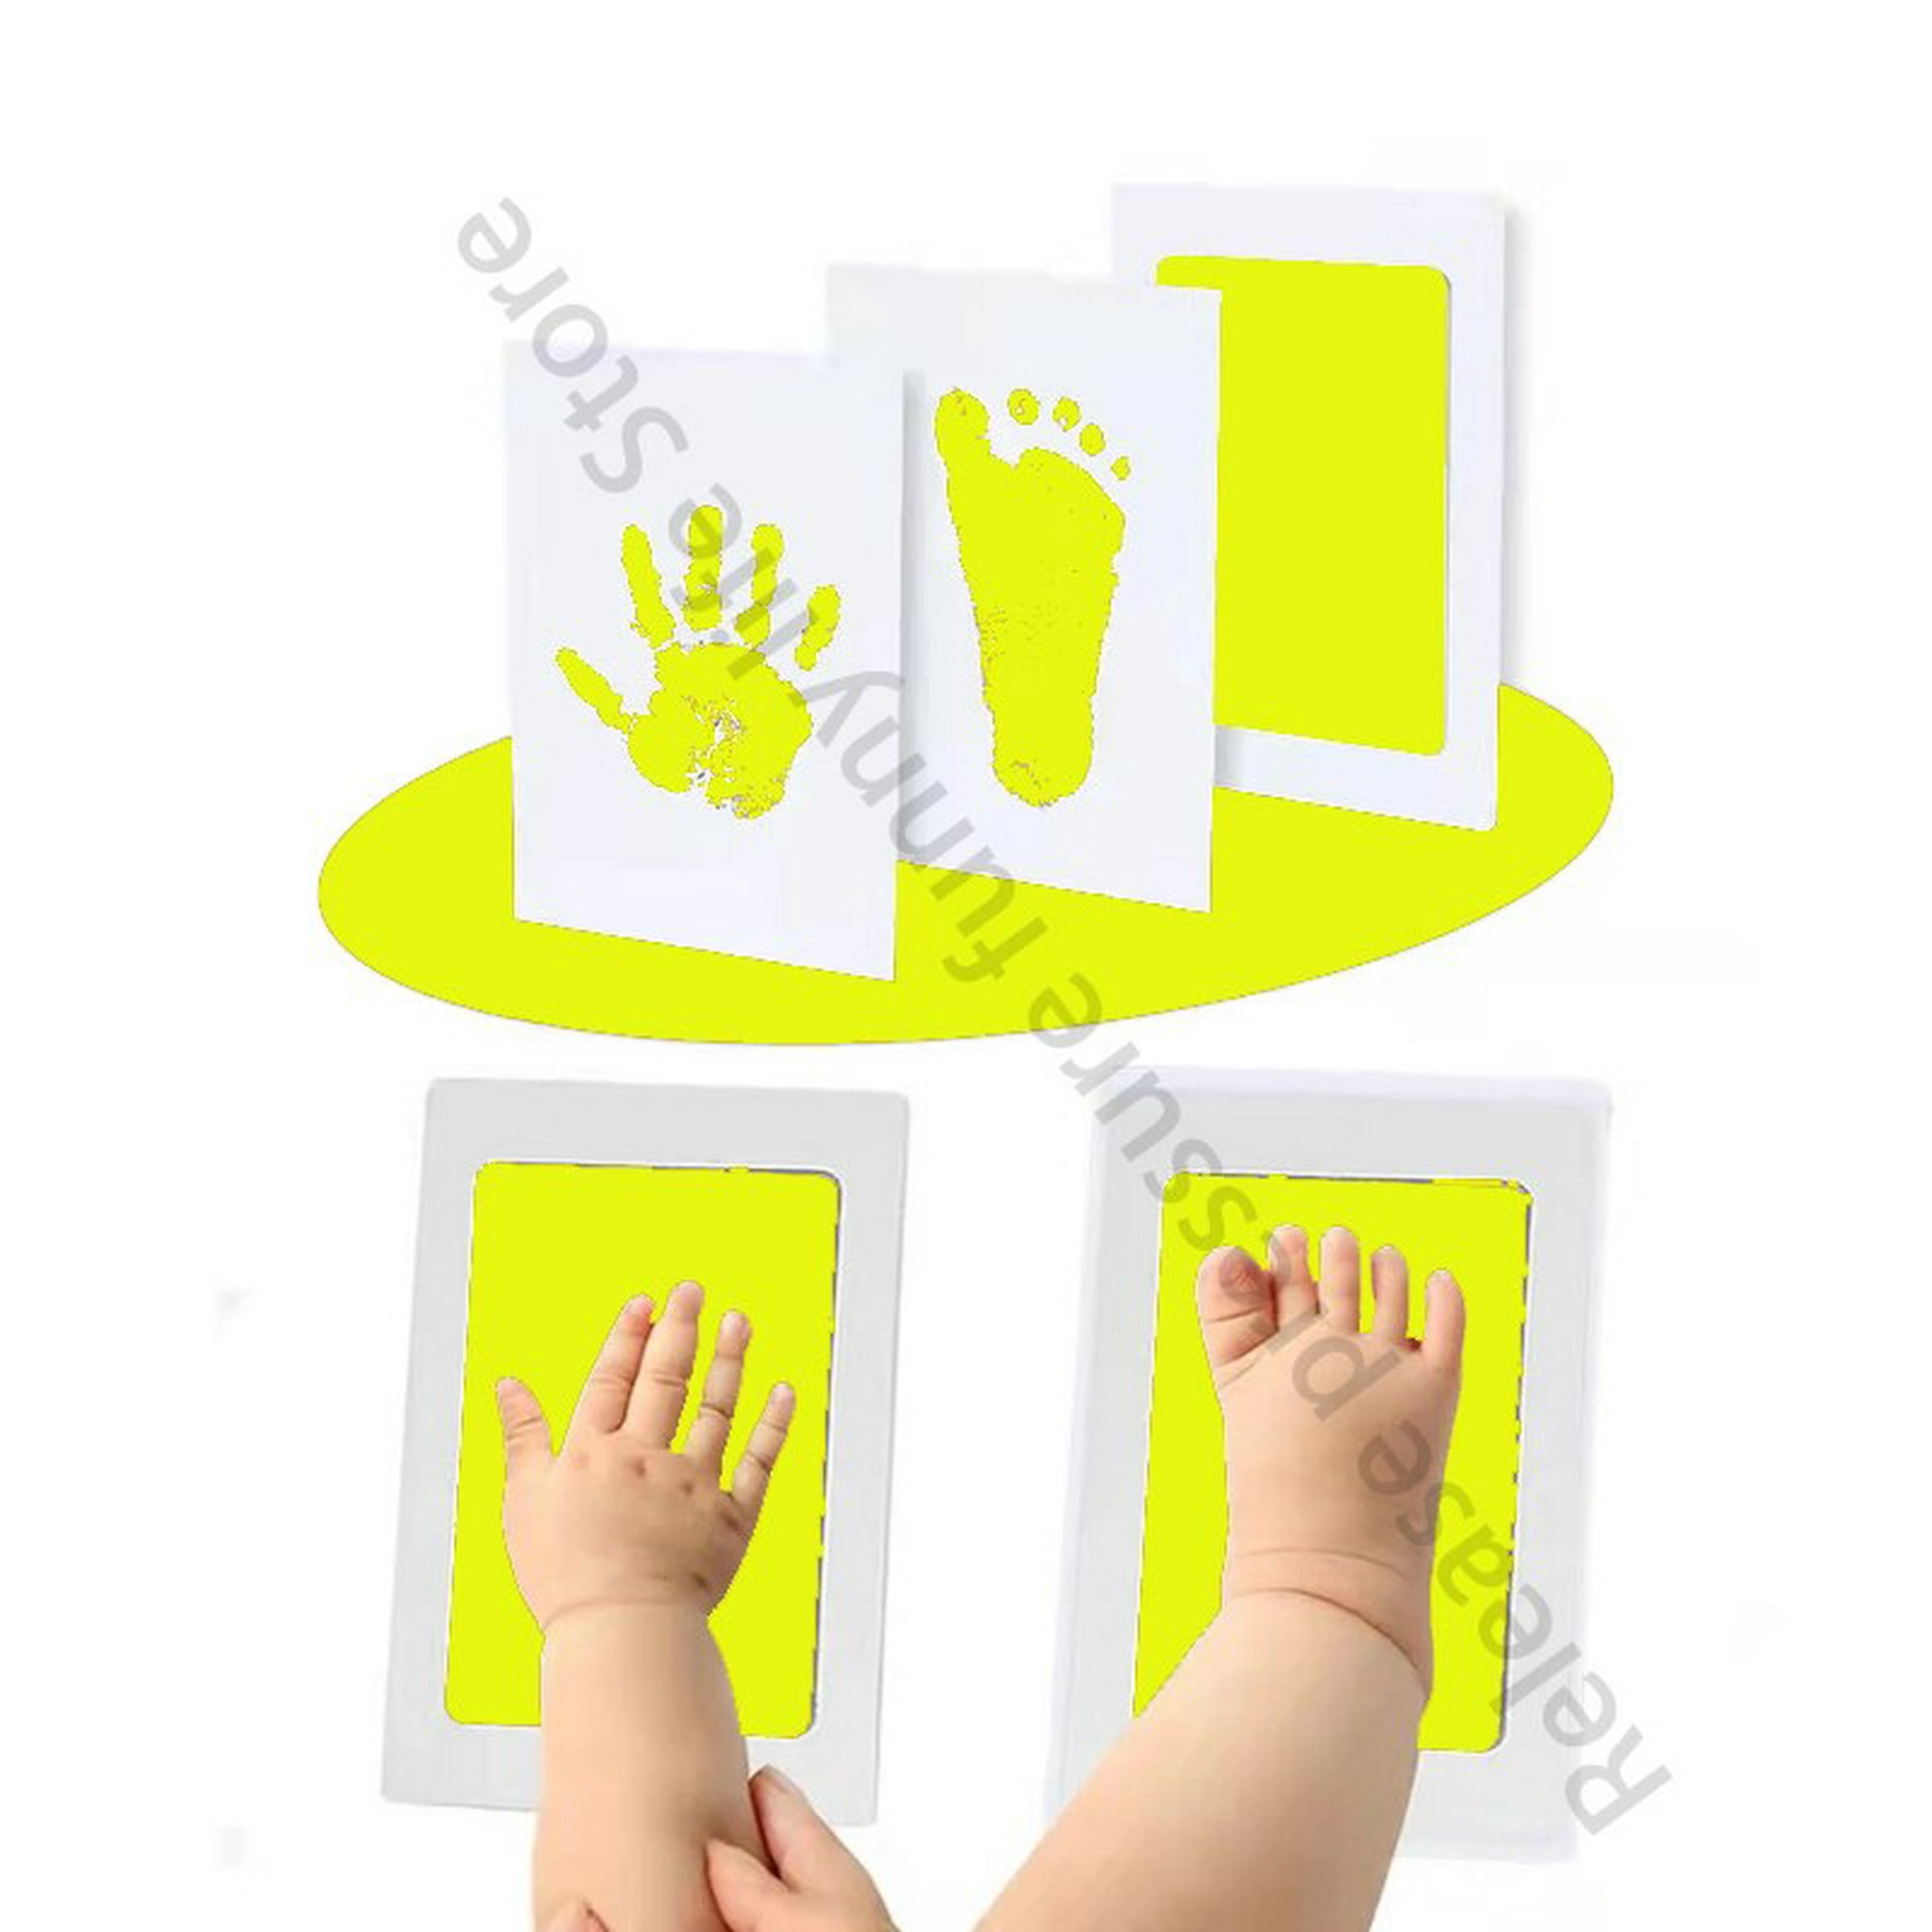 Kit de marco de fotos de huellas y huellas de manos de bebé recién